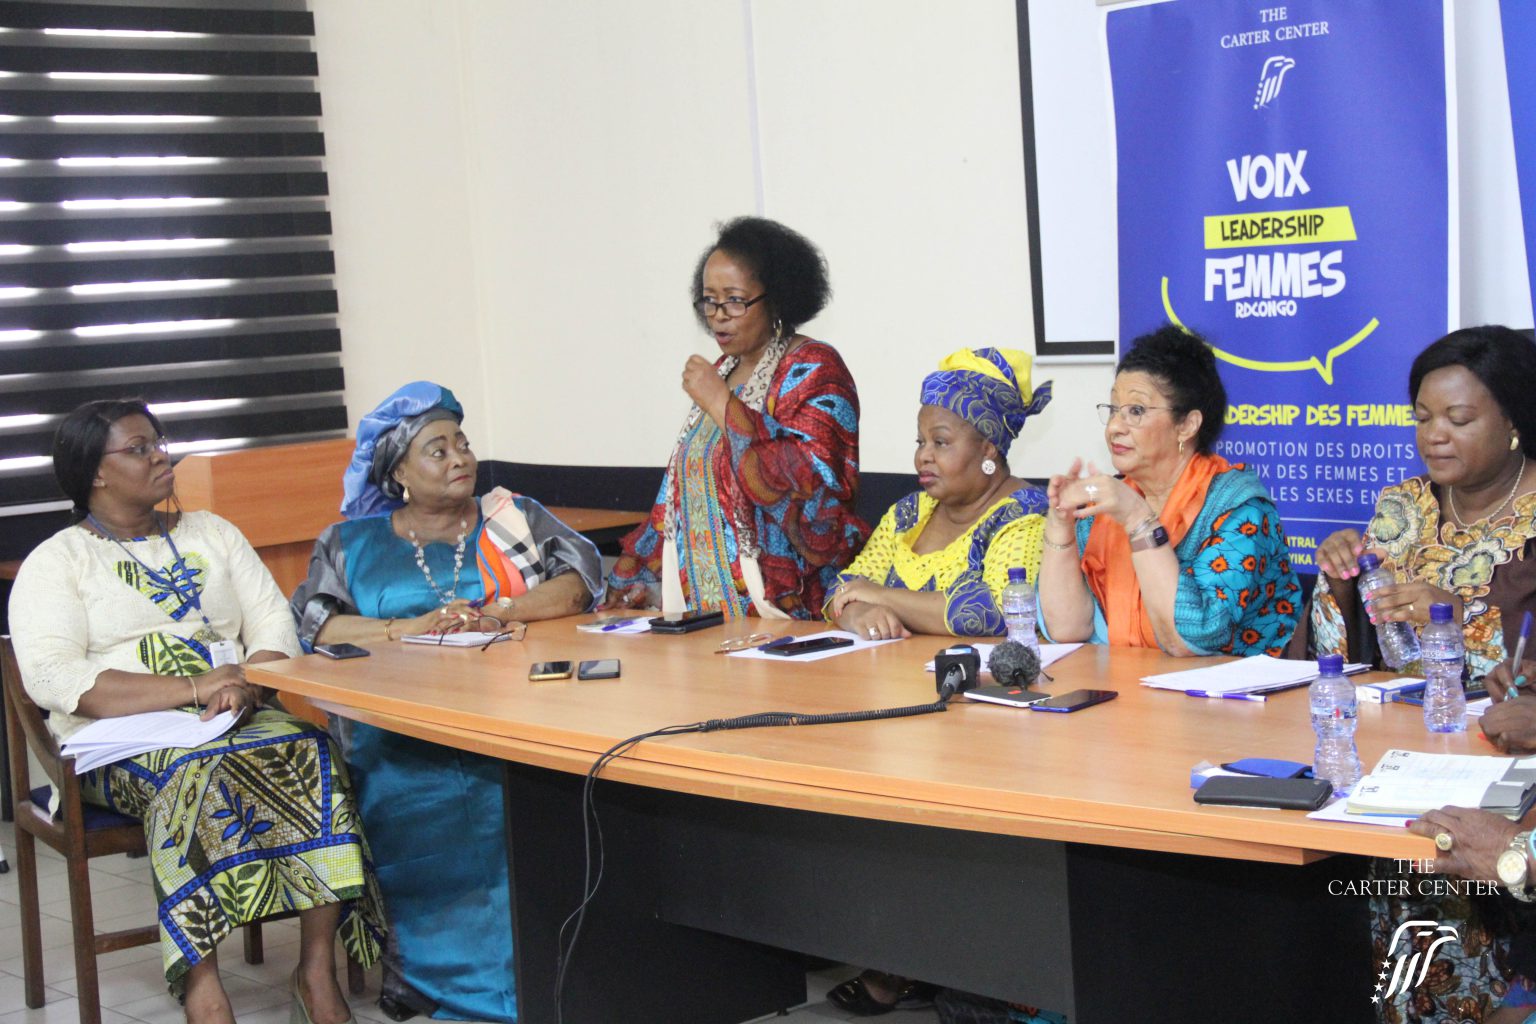 Le groupe de plaidoyer Voix et leadership des femmes appelle à une participation accrue des femmes en politique